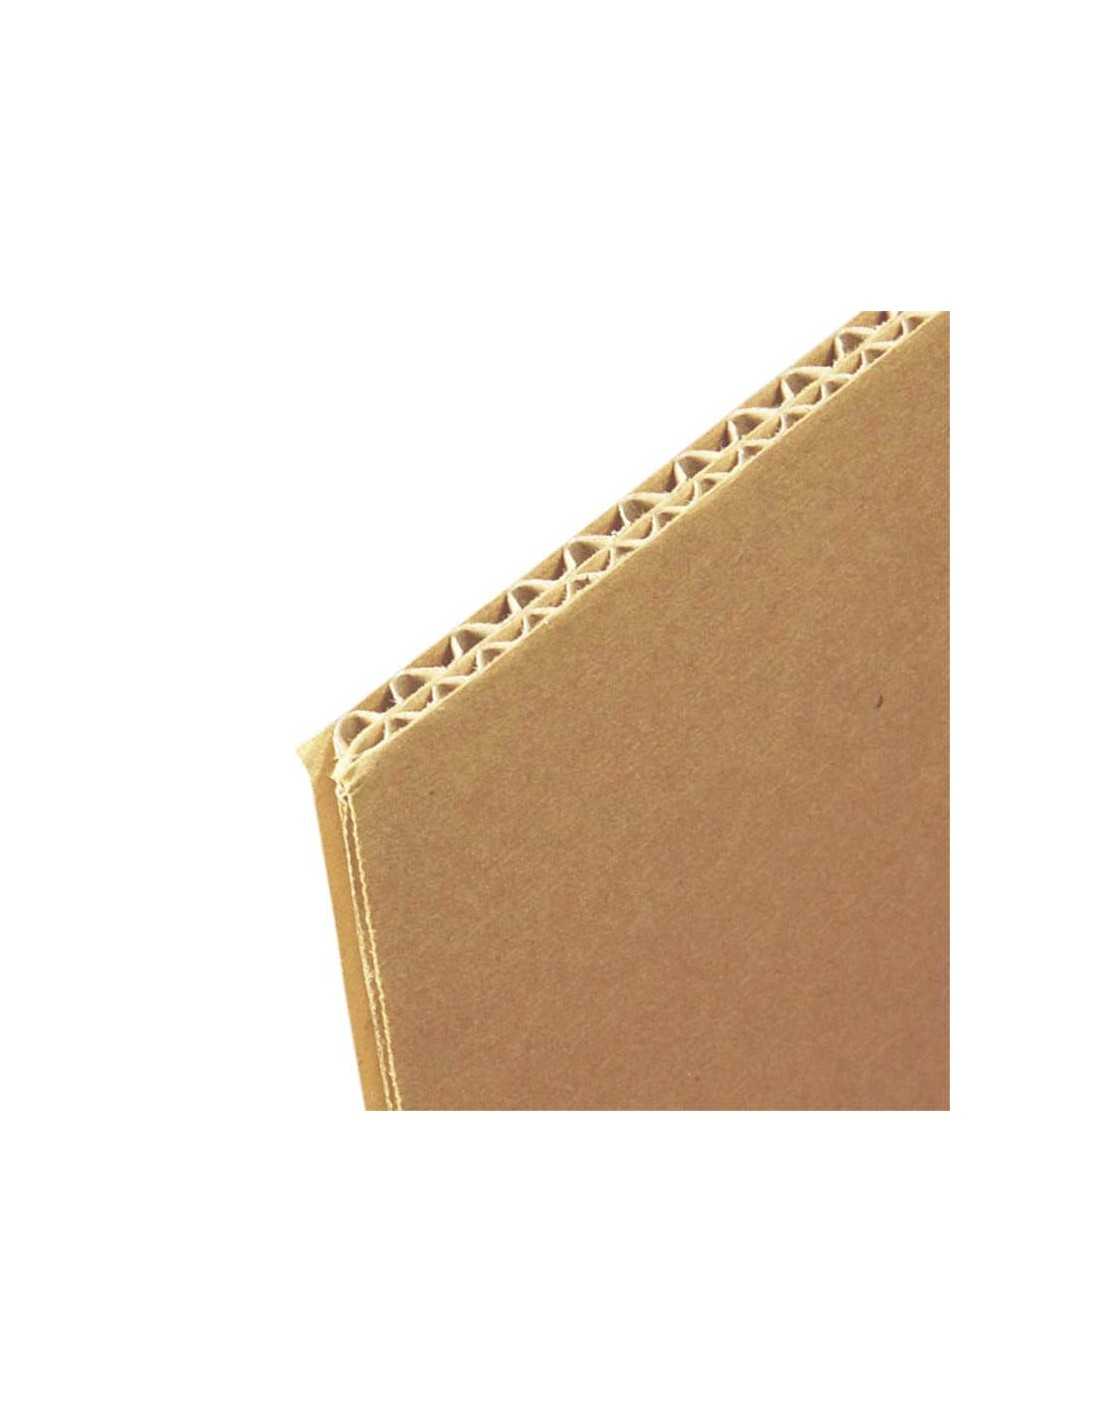 Cartón Corrugado A4, Laminas de cartón ondulado rígido 4 mm marrón